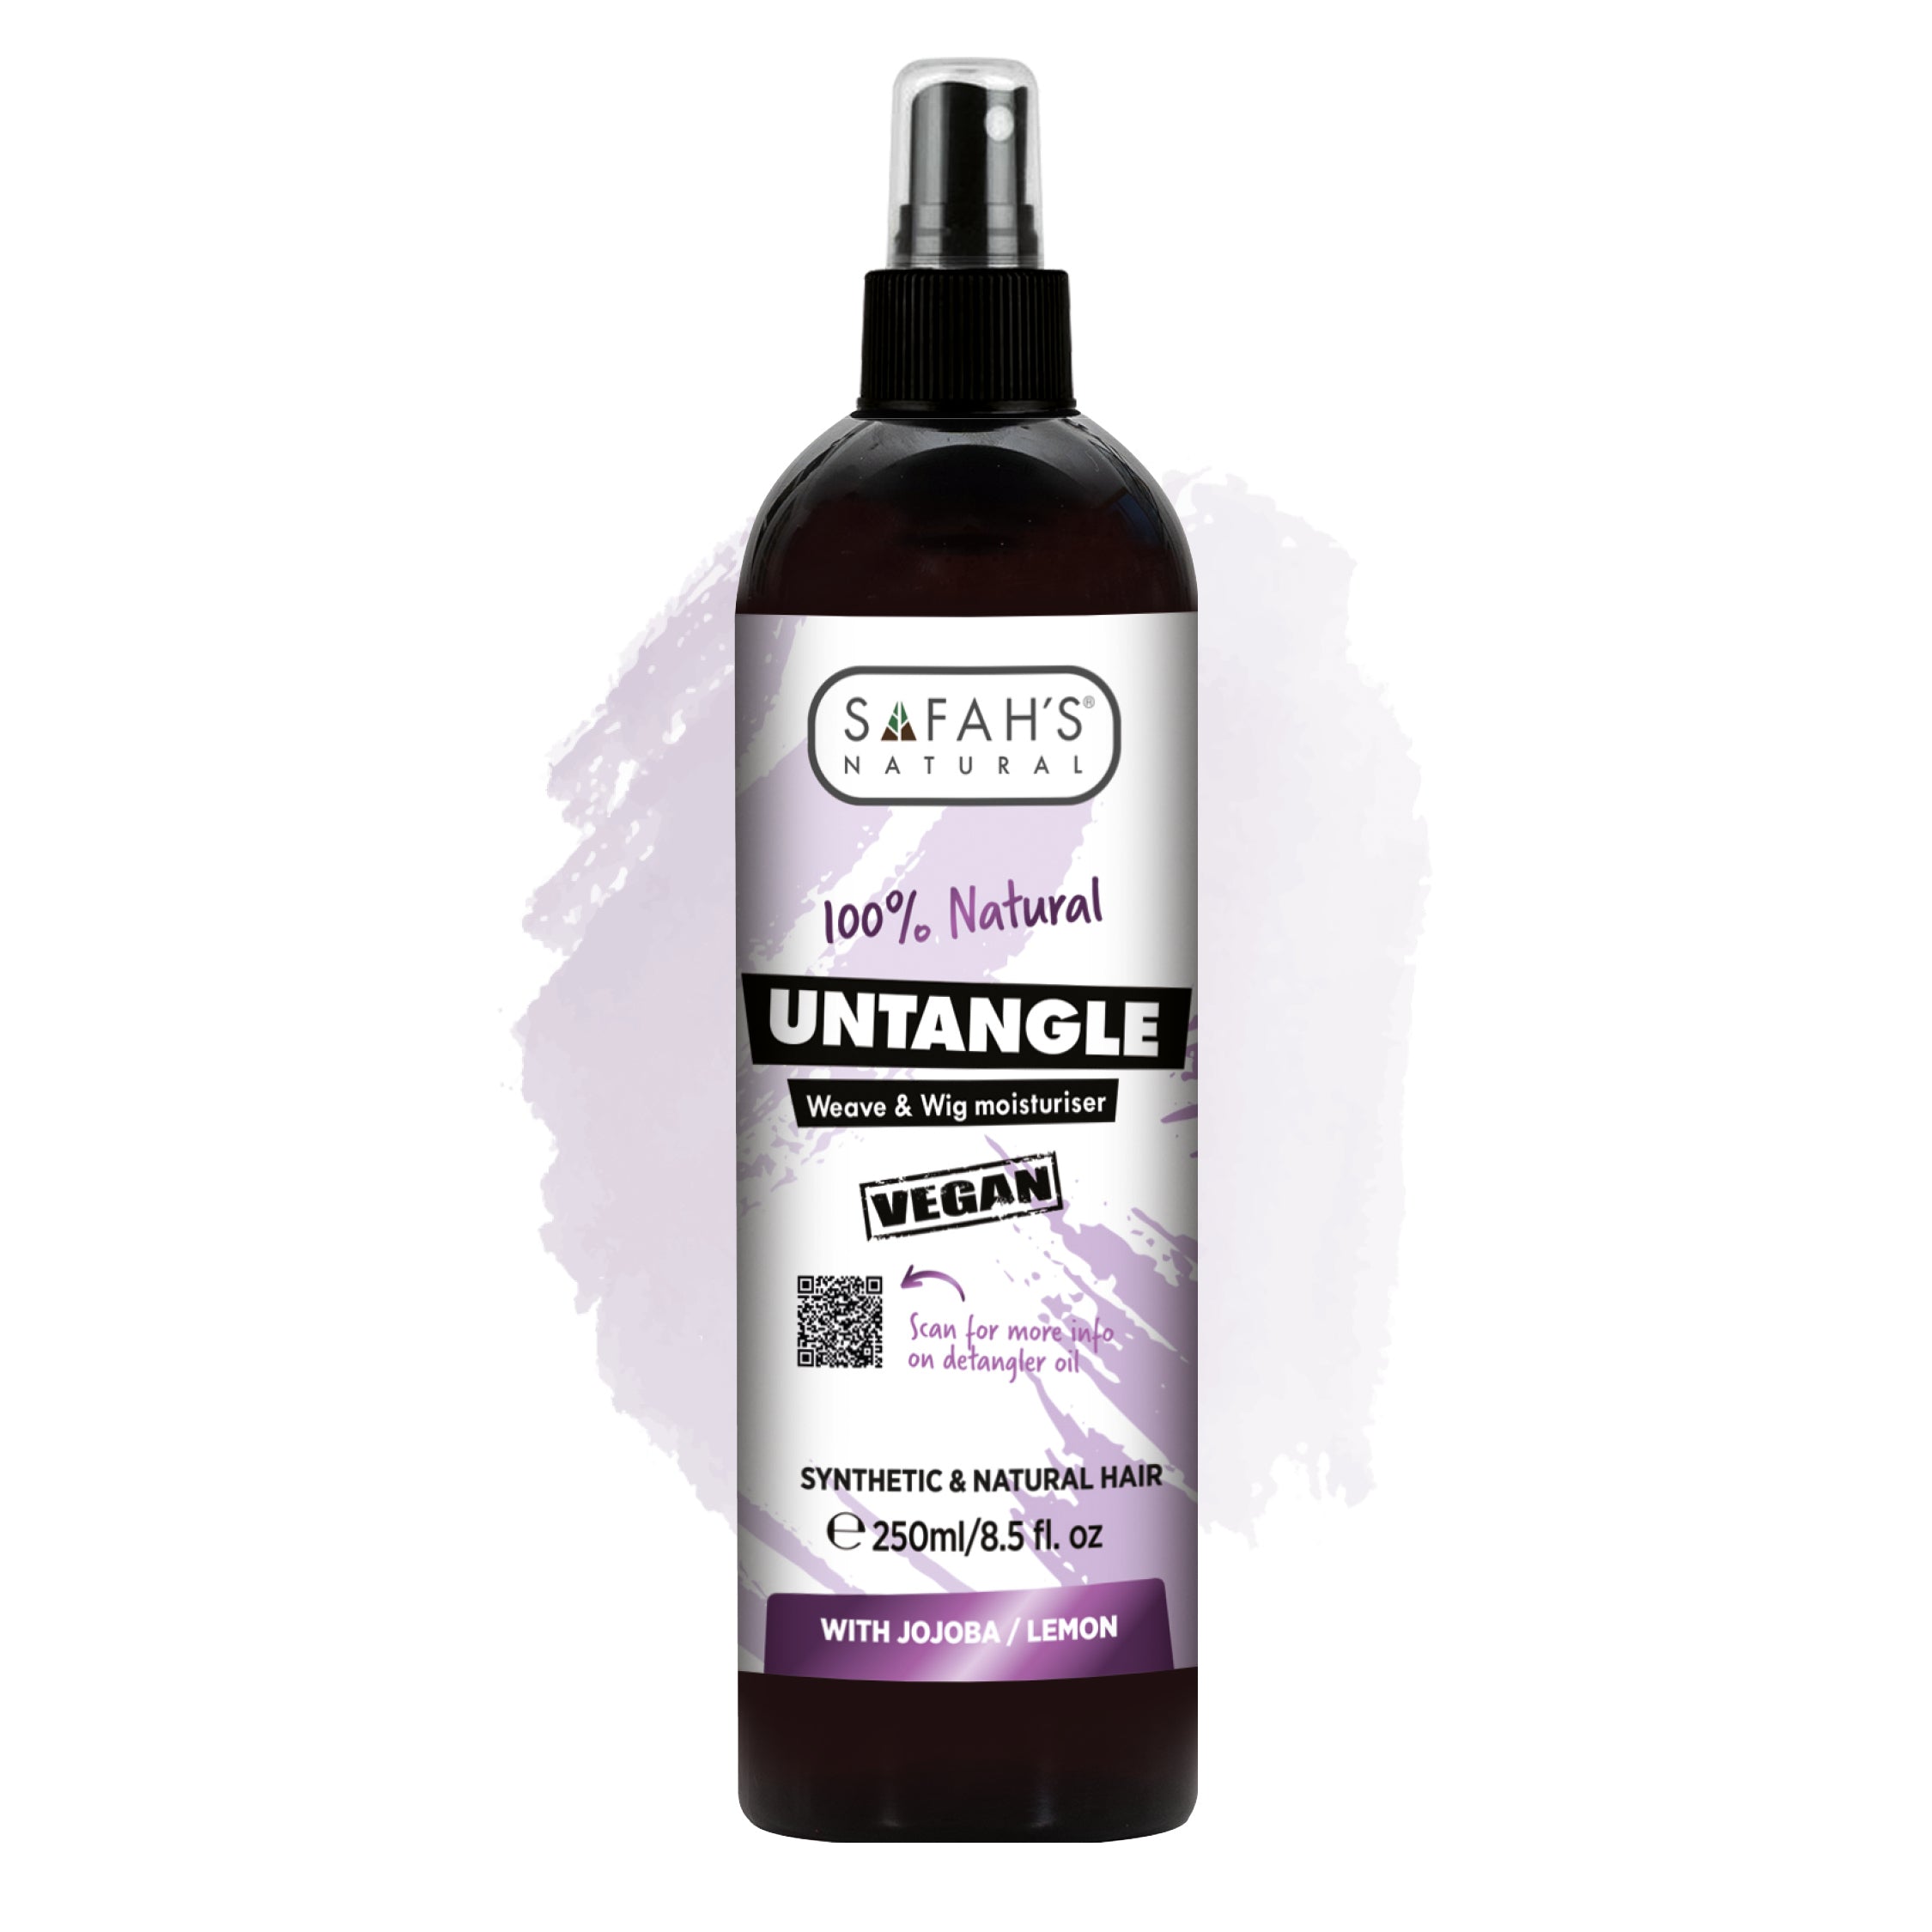 Untangle Weave & Wig Spray - Jojoba & Lemon Oil Formula for Easy Detangling